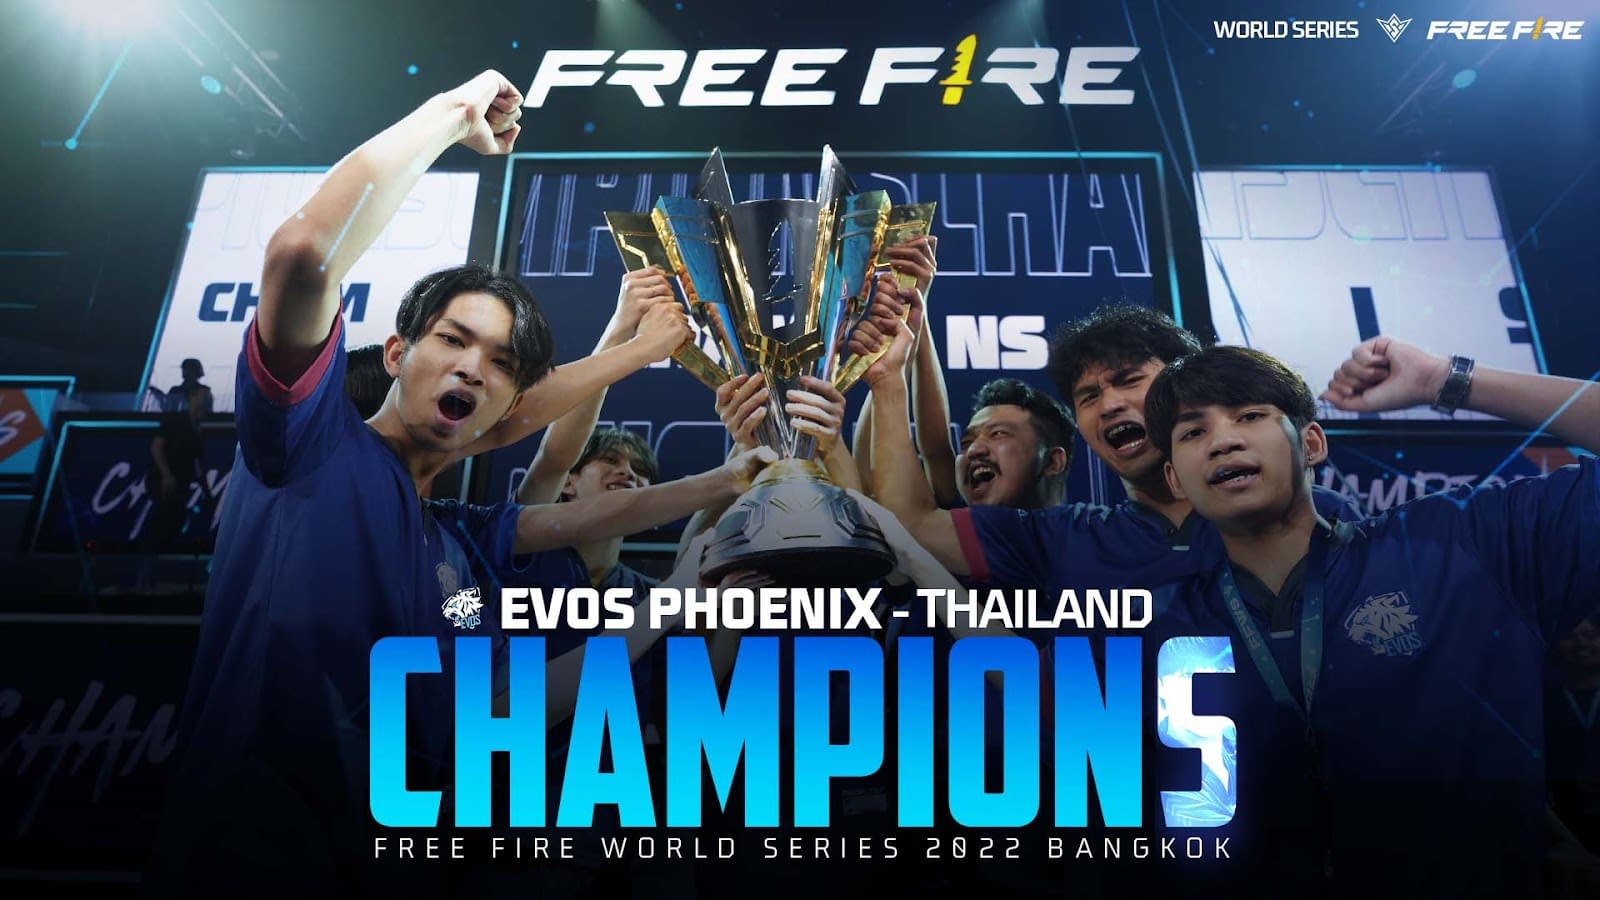 Evos Phoenix vence o Free Fire World Series 2022 Bangkok e vira bicampeã da  competição